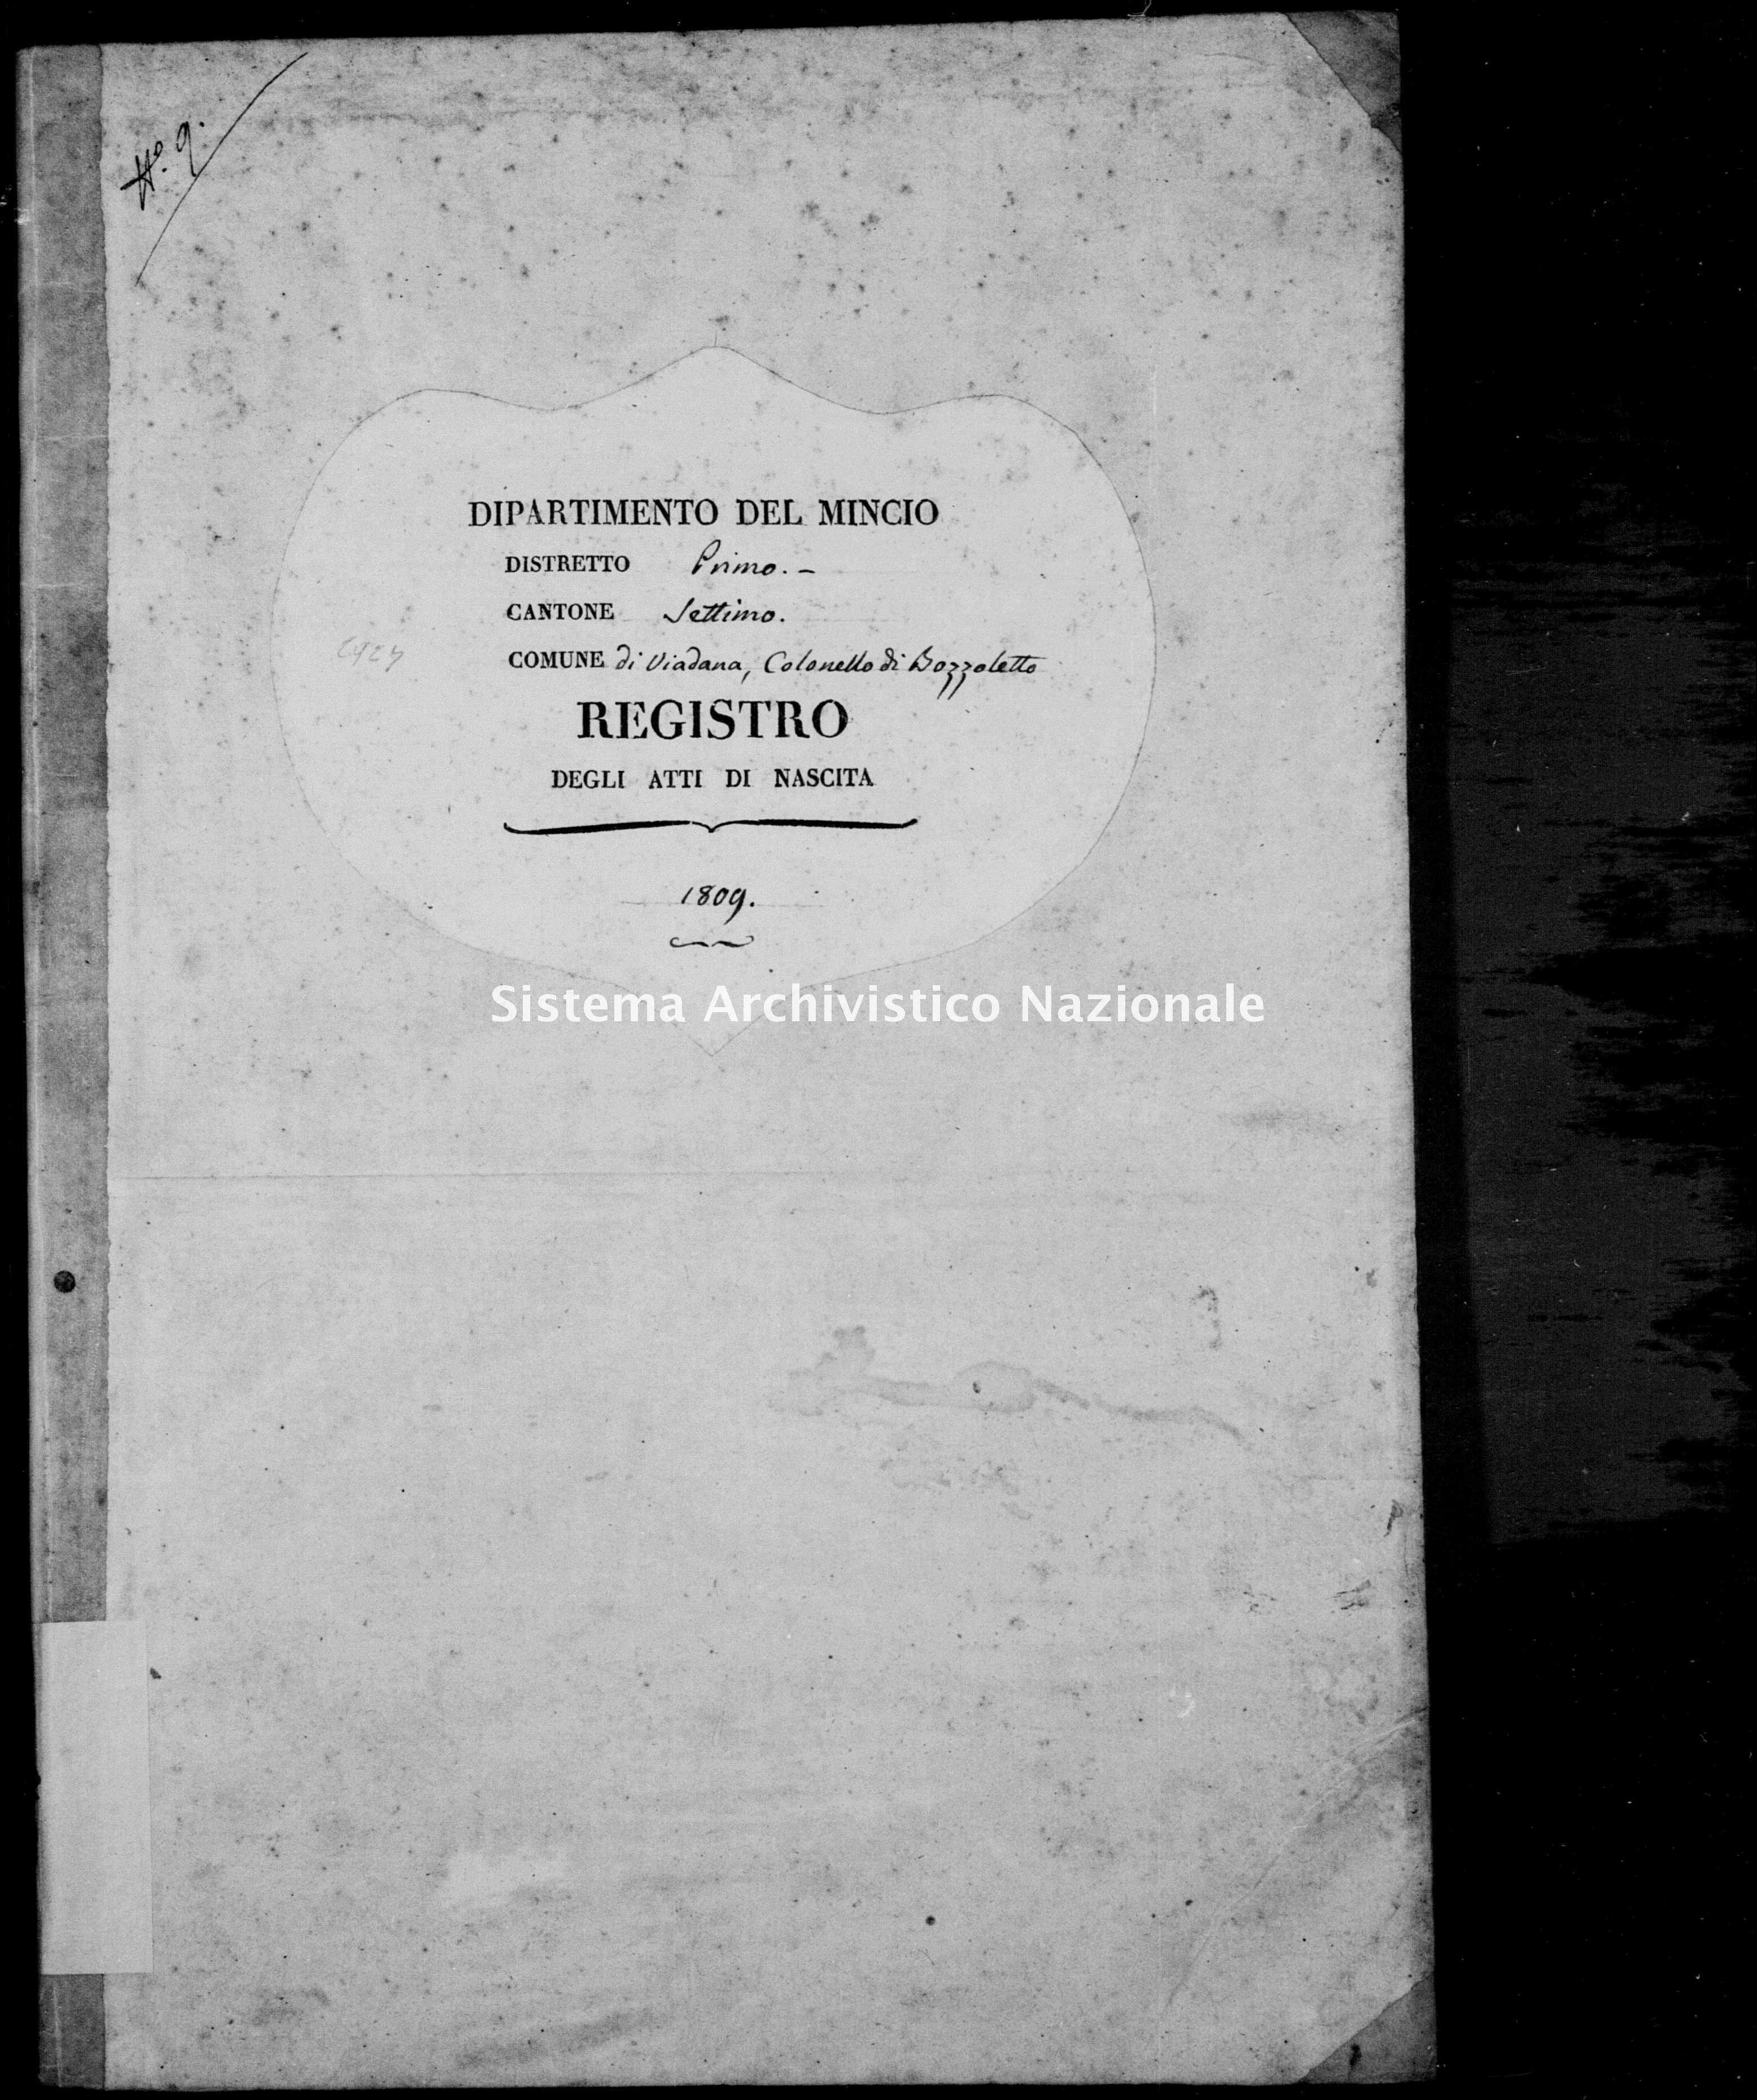 Archivio di stato di Mantova - Stato civile e anagrafe del Dipartimento del Mincio - Bozzoletto-(oggi-Buzzoletto,-frazione-di-Viadana) - Nati - 1809 - 2928 -